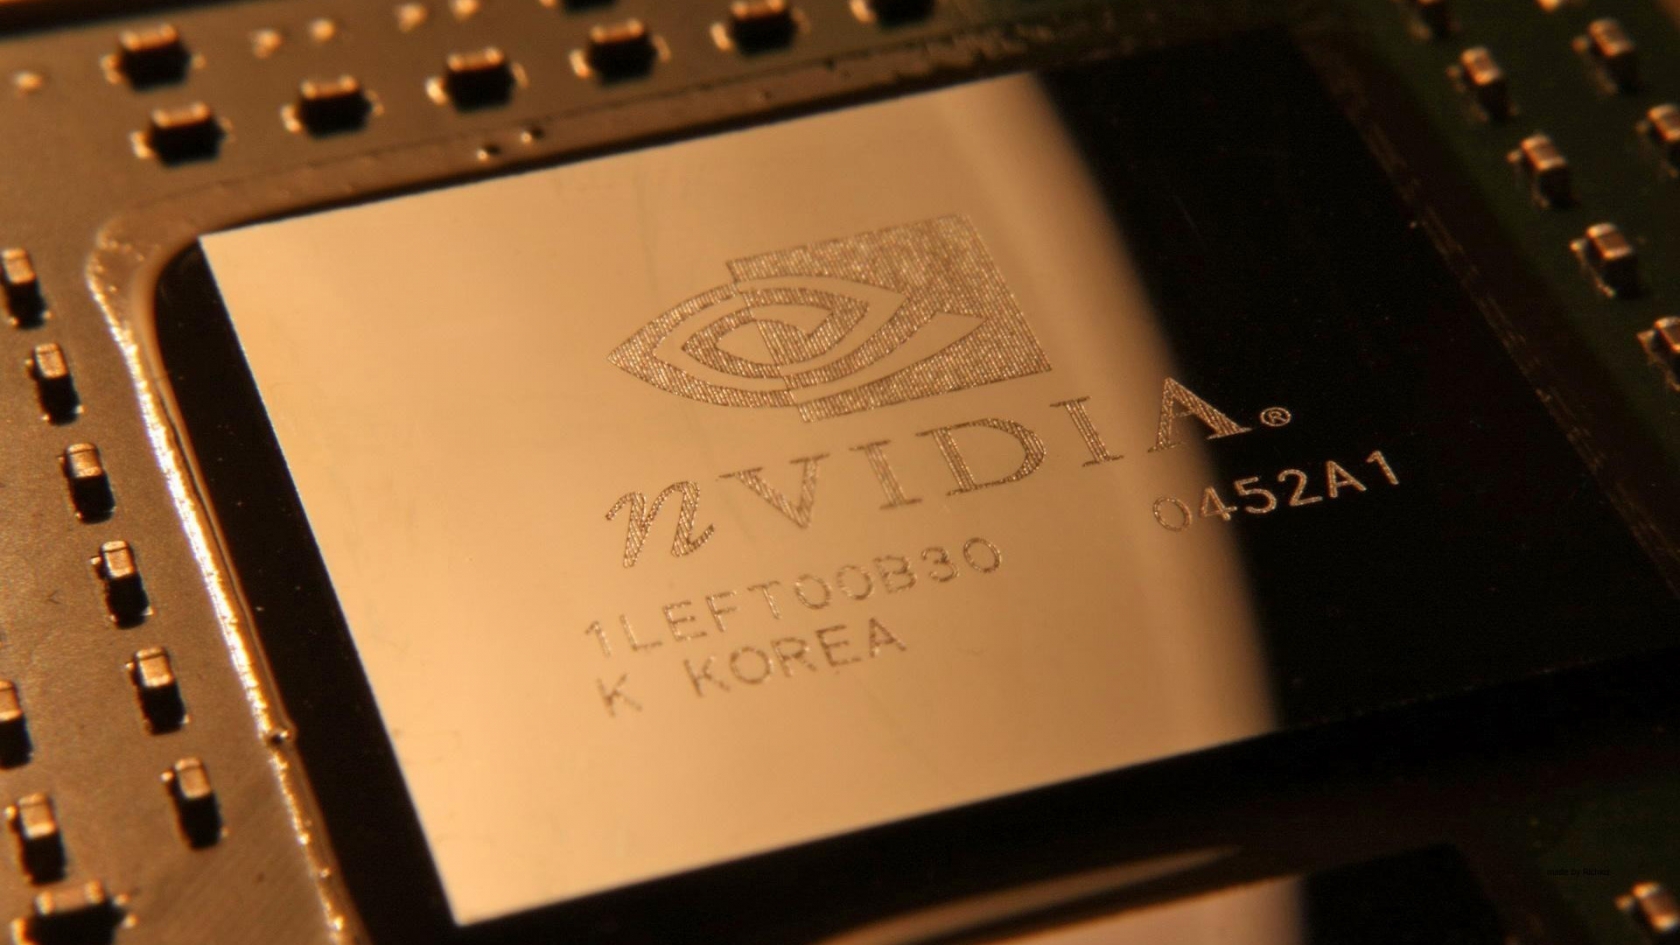 nVIdia Chipset for 1680 x 945 HDTV resolution